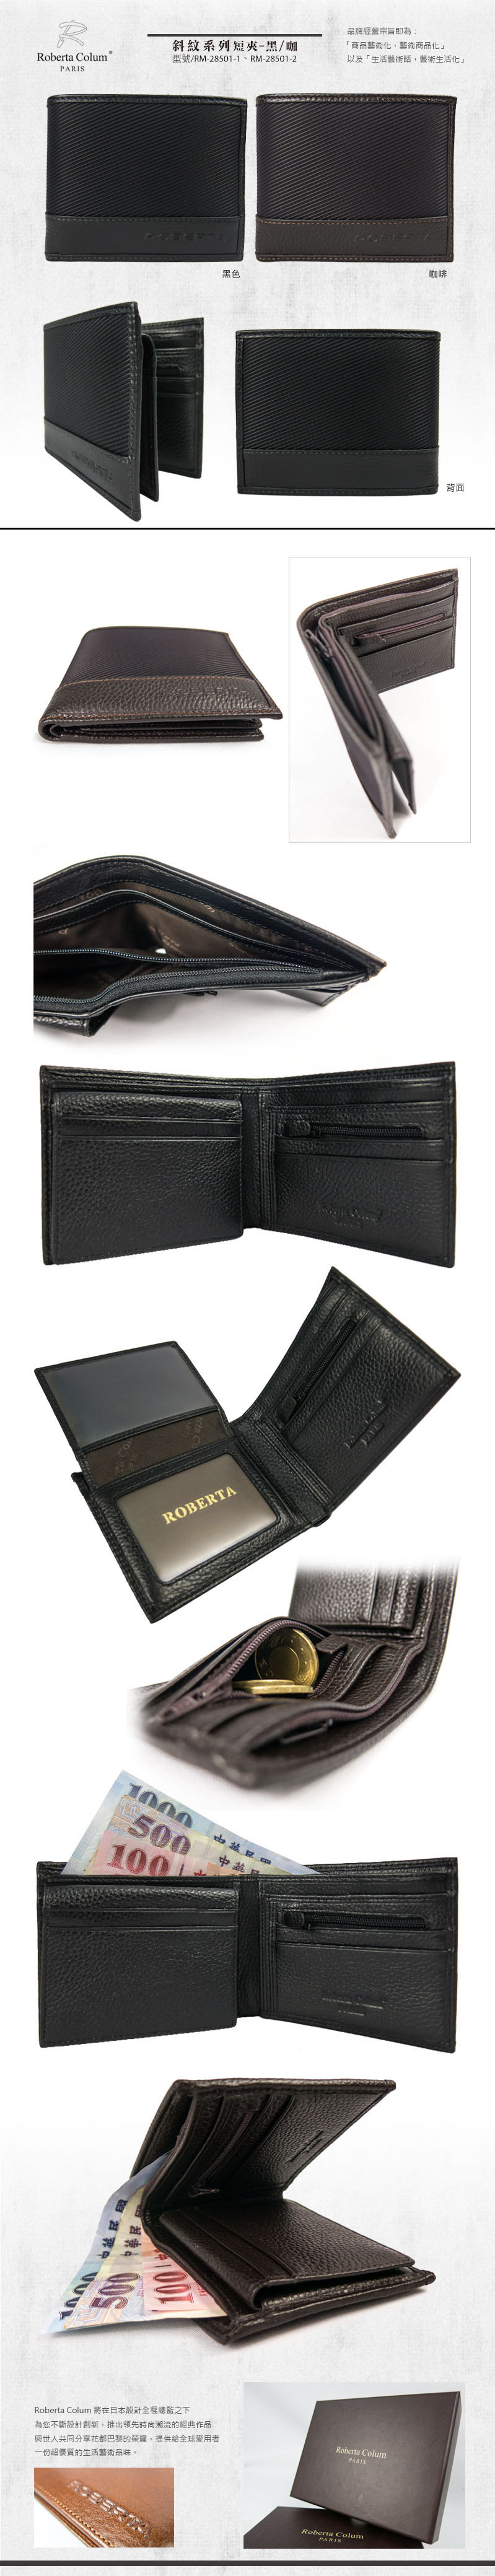 ROBERTA 諾貝達 皮夾 斜紋系列 7卡左上翻零錢袋男夾 短夾 RM-28501 得意時袋